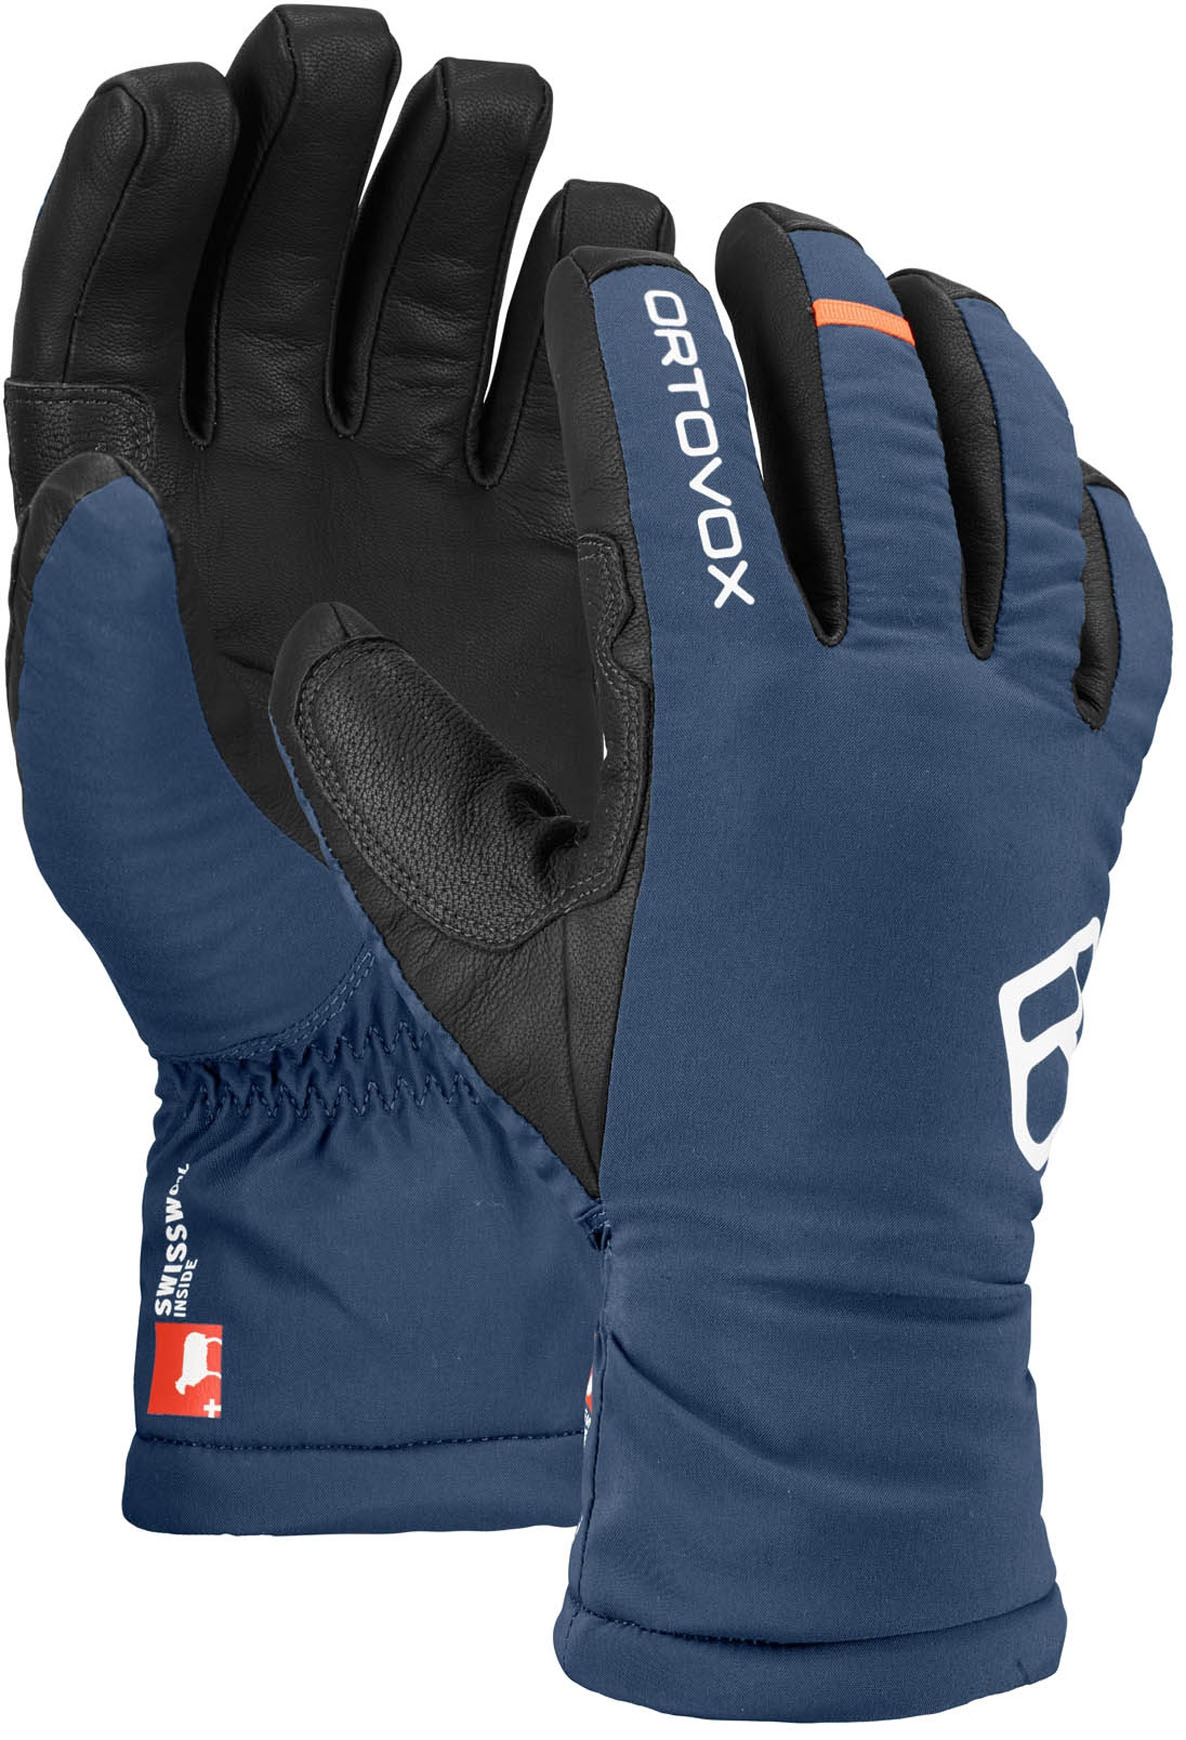 Горнолыжные перчатки унисекс Ortovox Freeride Night Blue